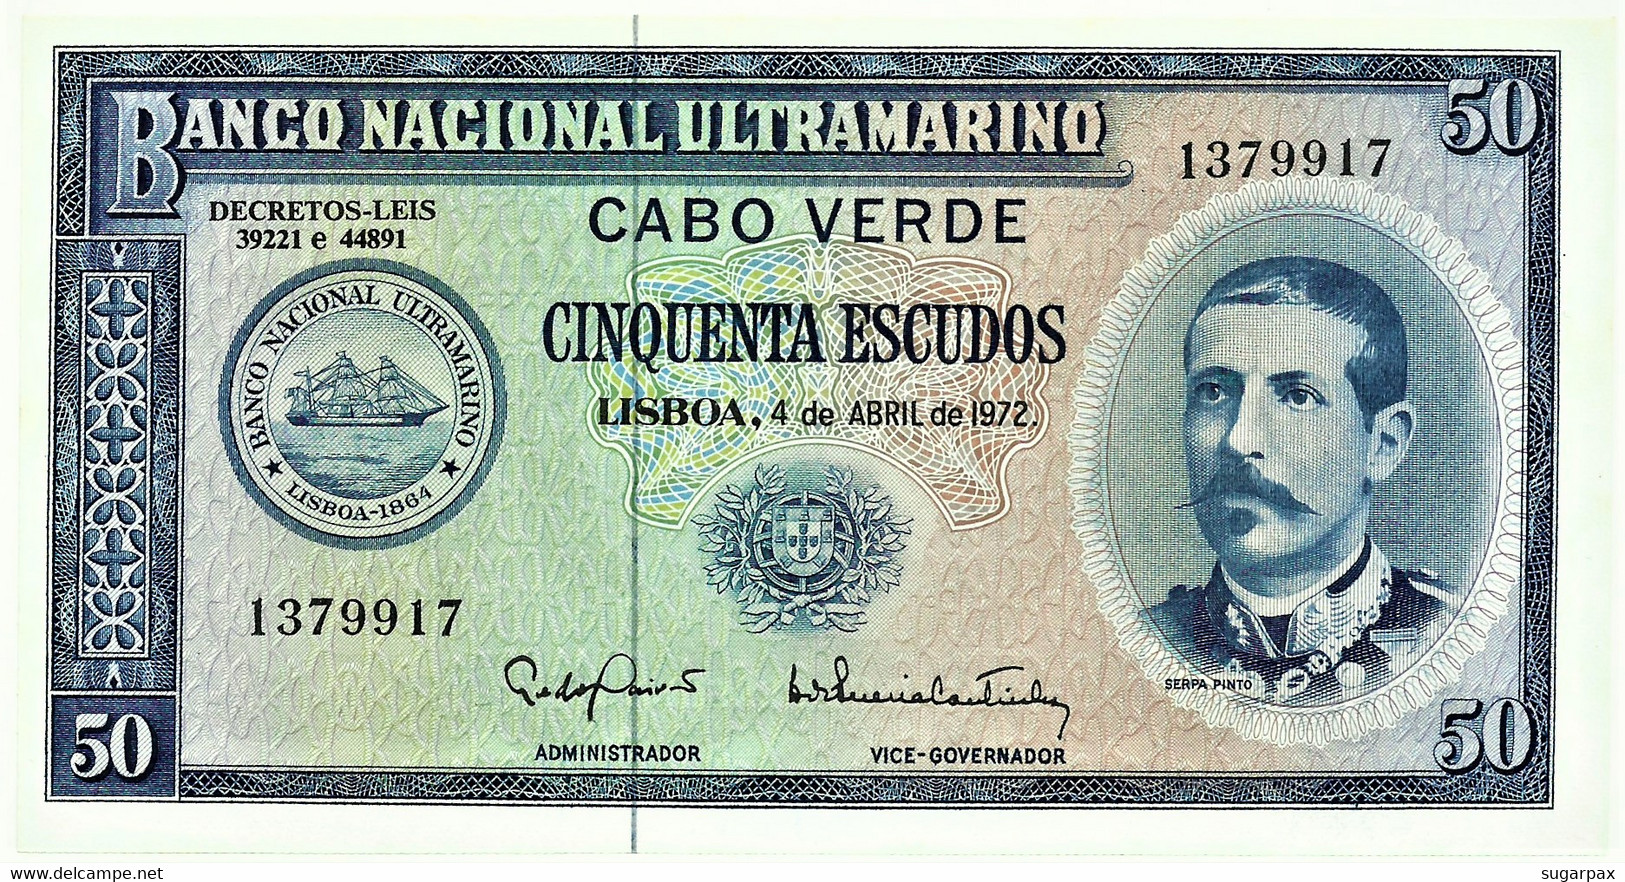 CAPE VERDE - 50 ESCUDOS - 04.04.1972 - Pick 53 - Unc. - Serpa Pinto - Portugal Cabo - Kaapverdische Eilanden